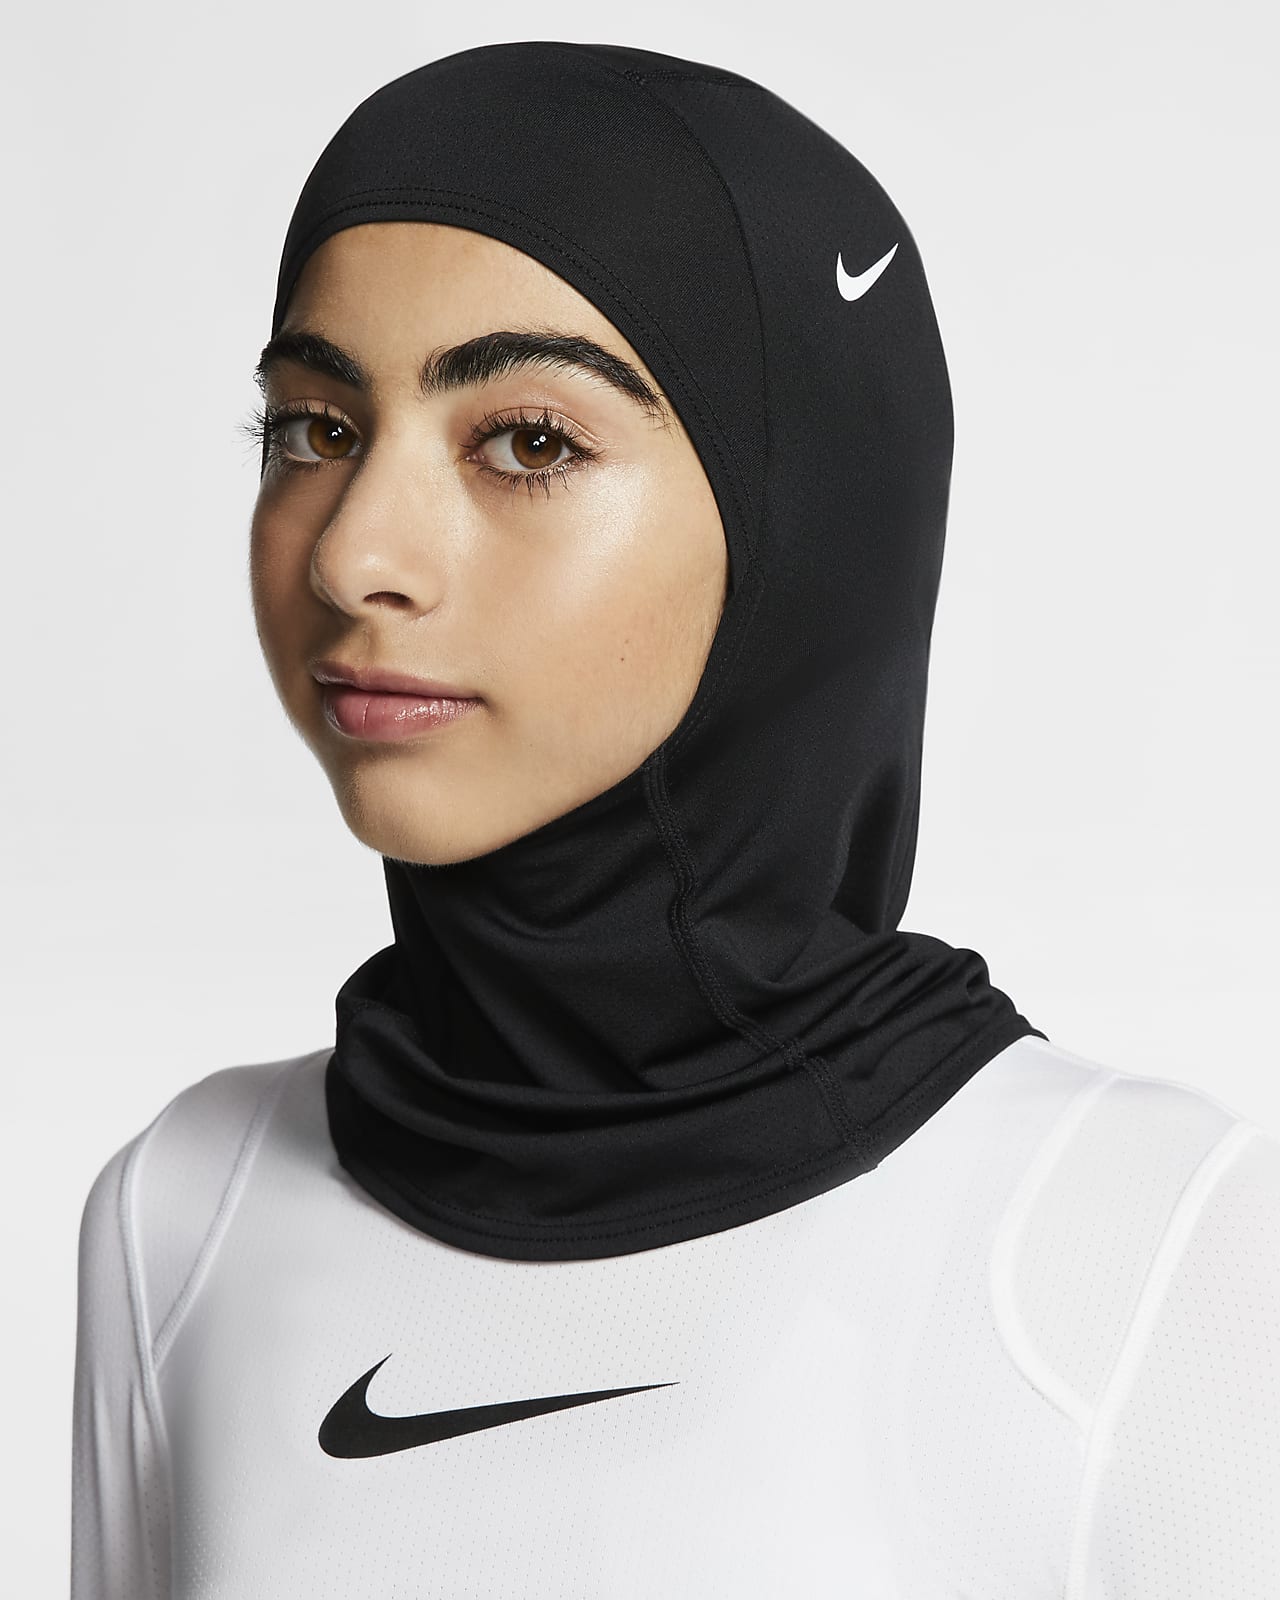 nike hijab collection